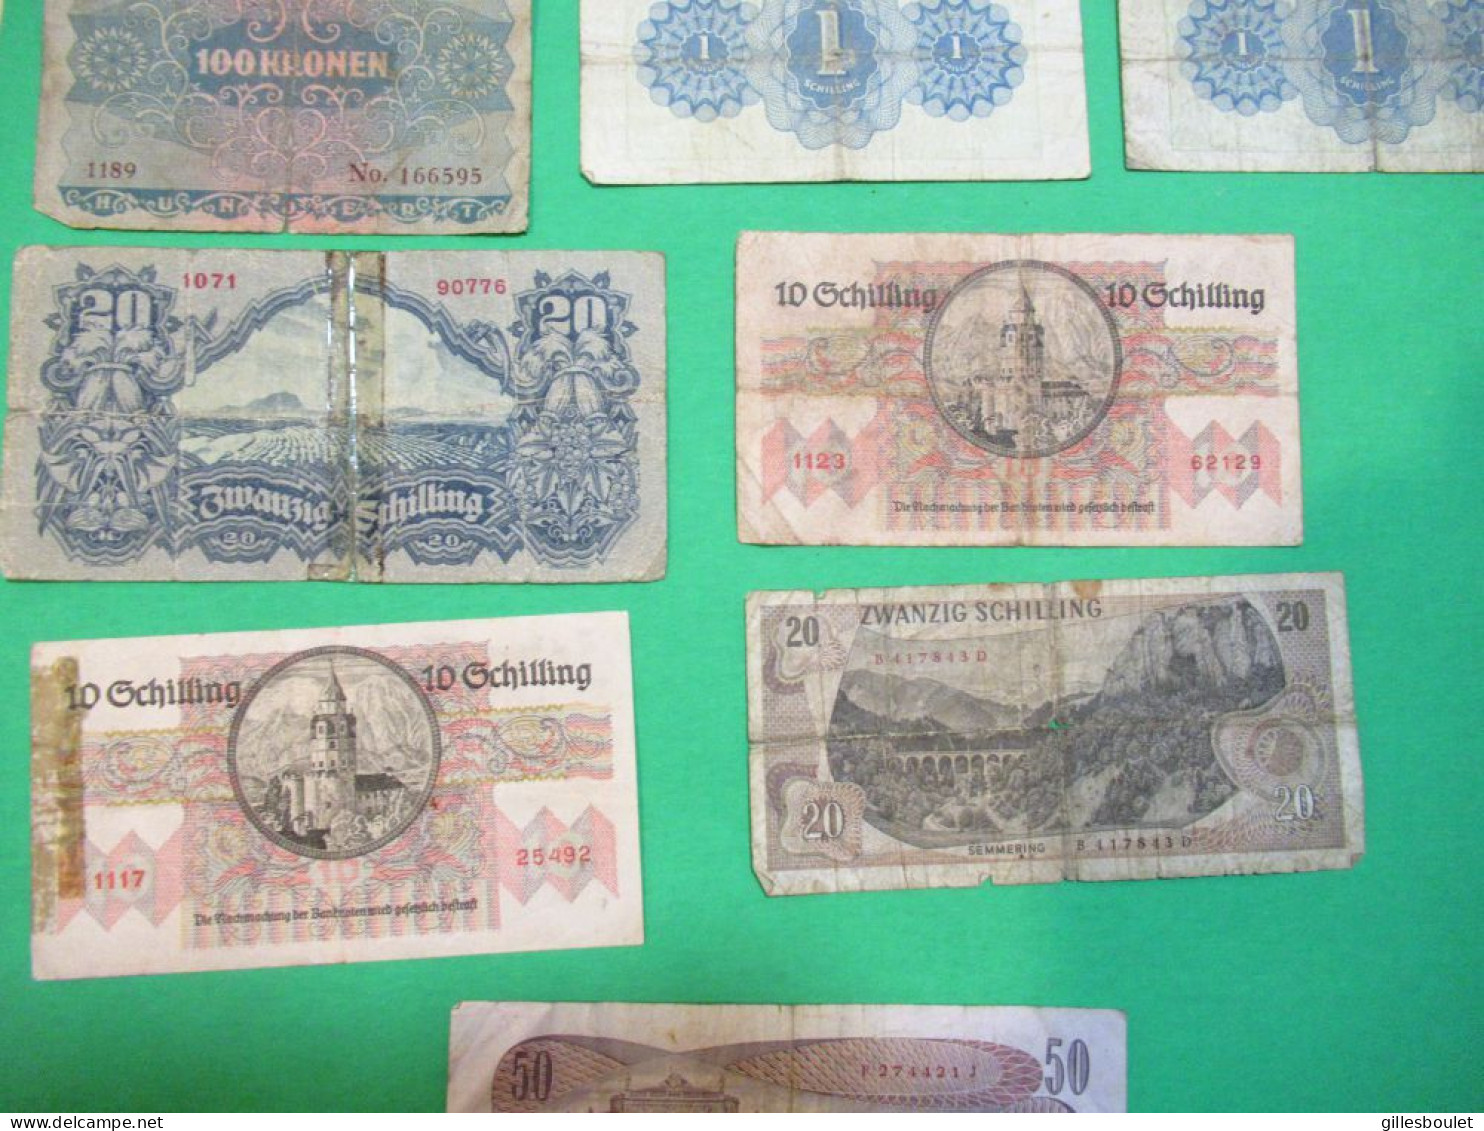 17 billets de banque d'Autriche. De 1902 à 1970. Voir le détail qui suit.